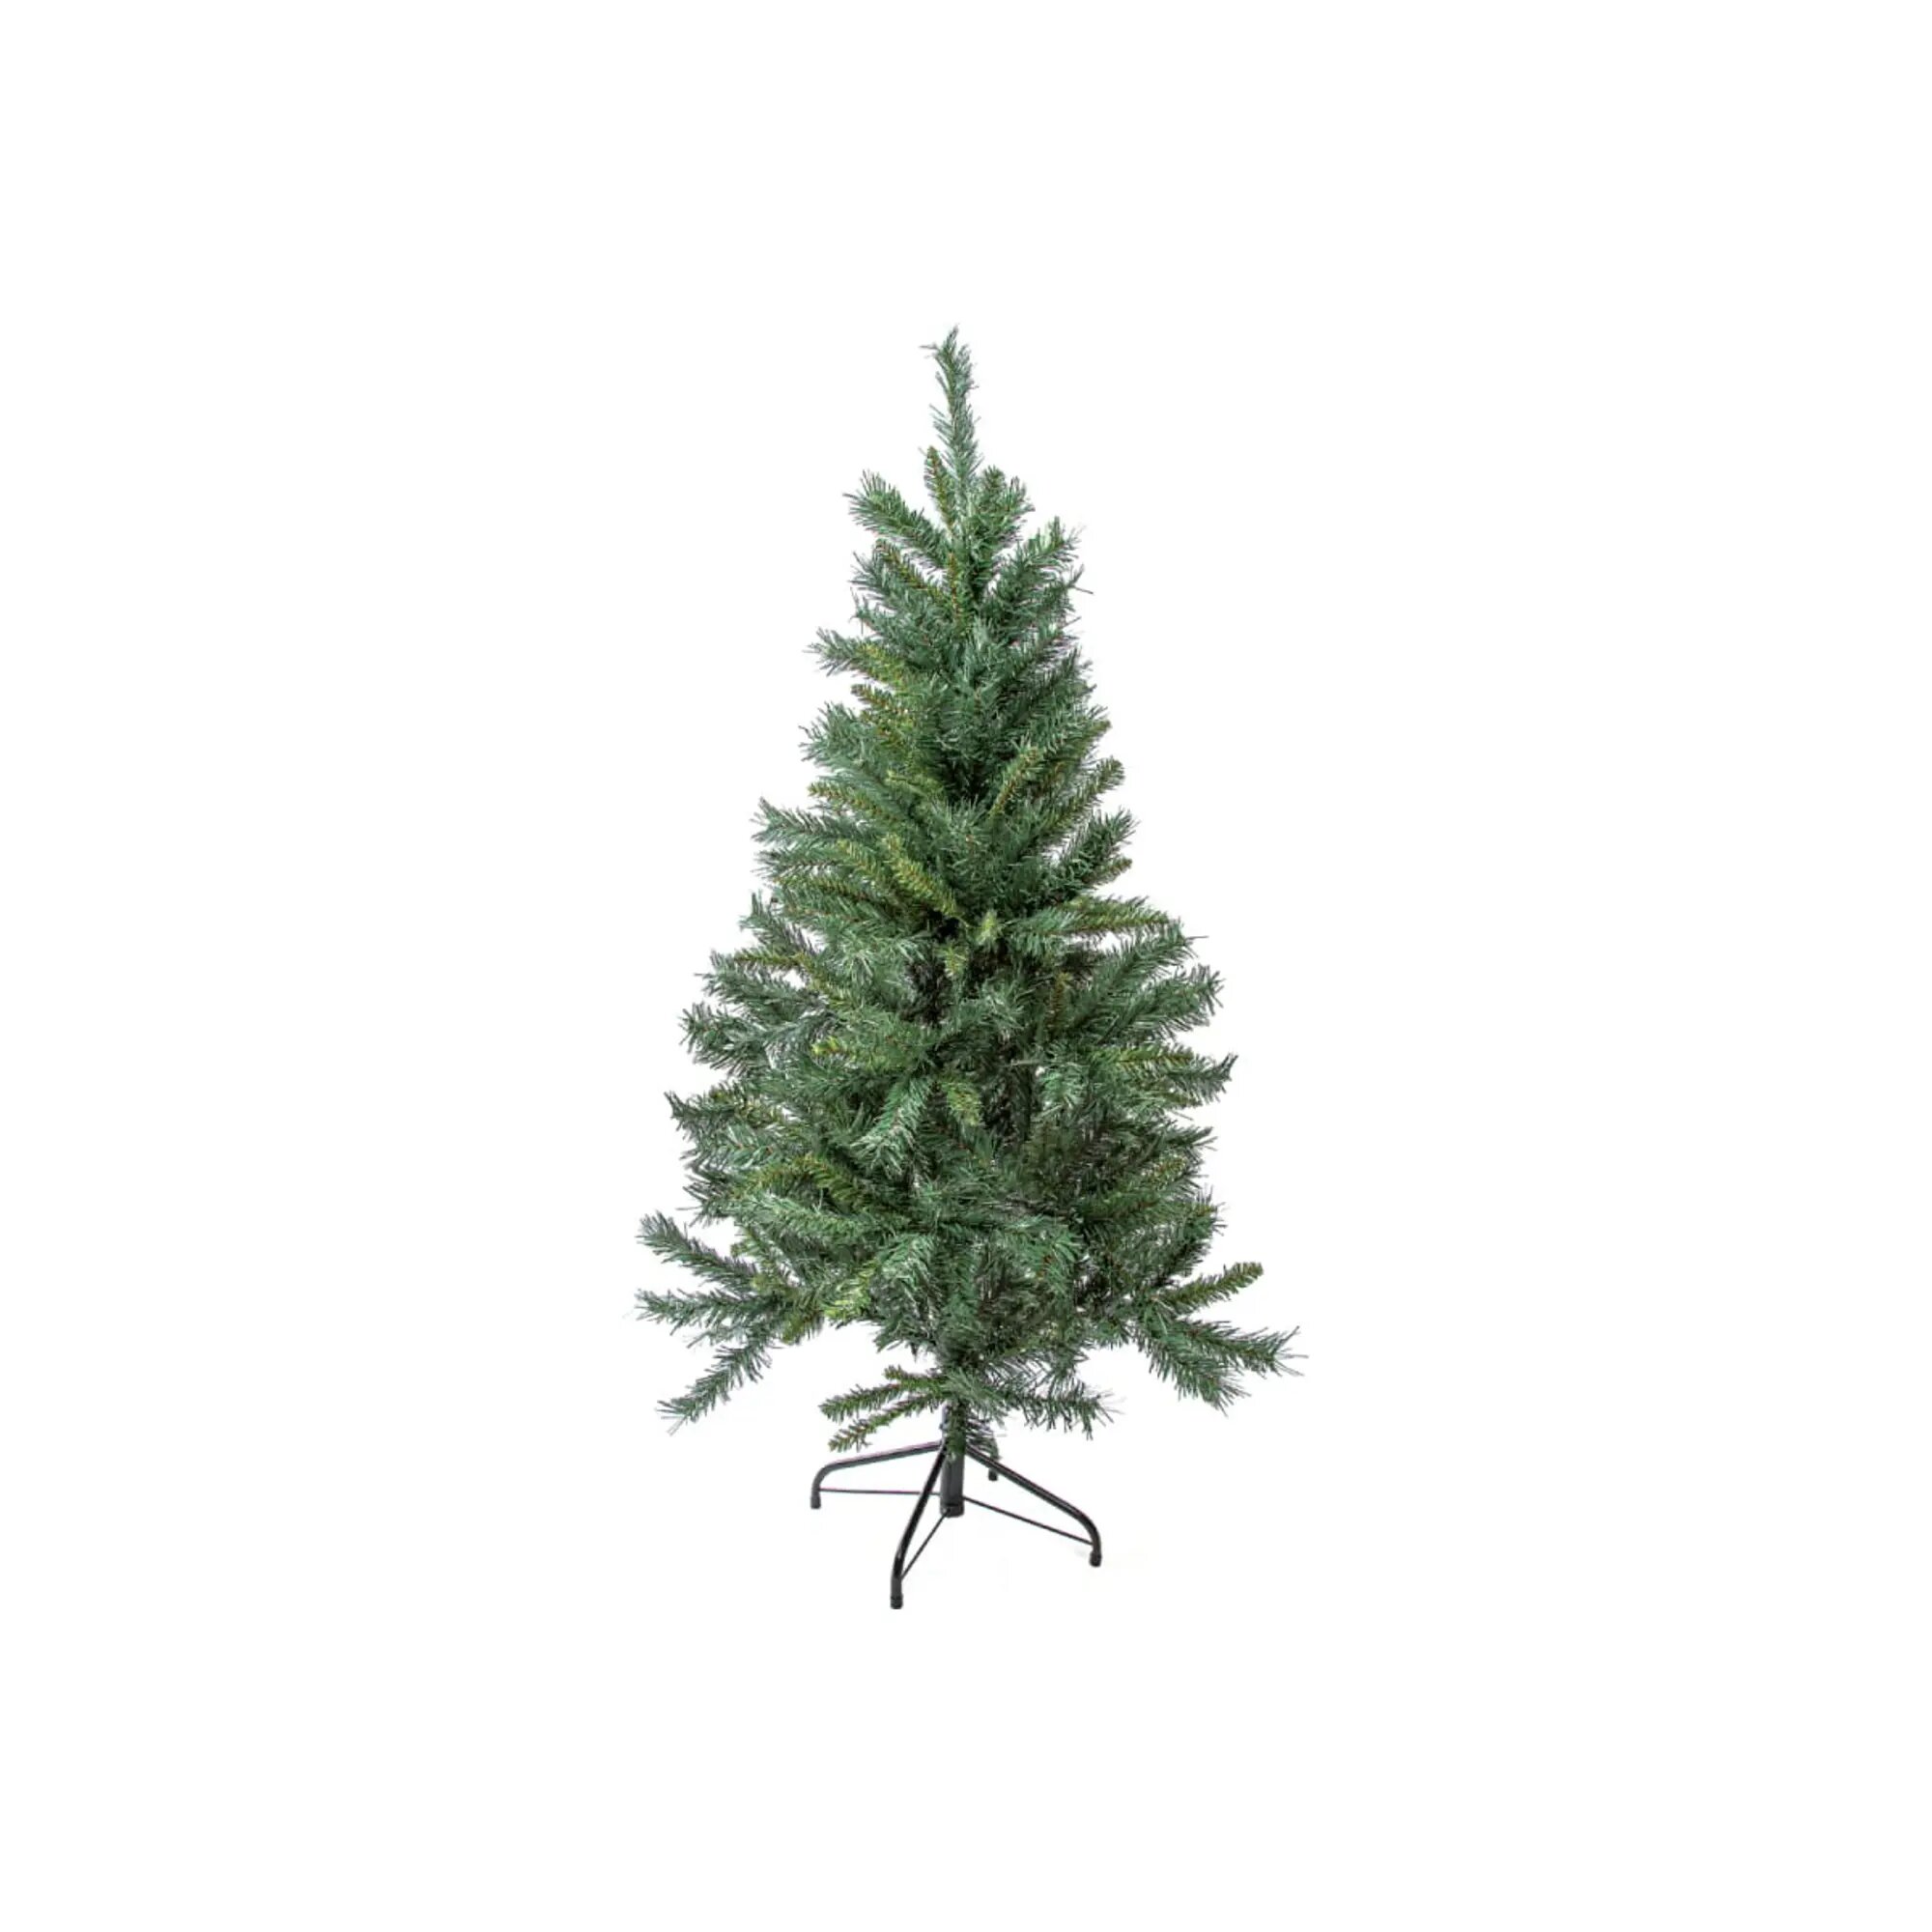 Ель искусственная Royal Christmas Dover Promo (521180) 180см напольная 475вет. зеленый - фото №13